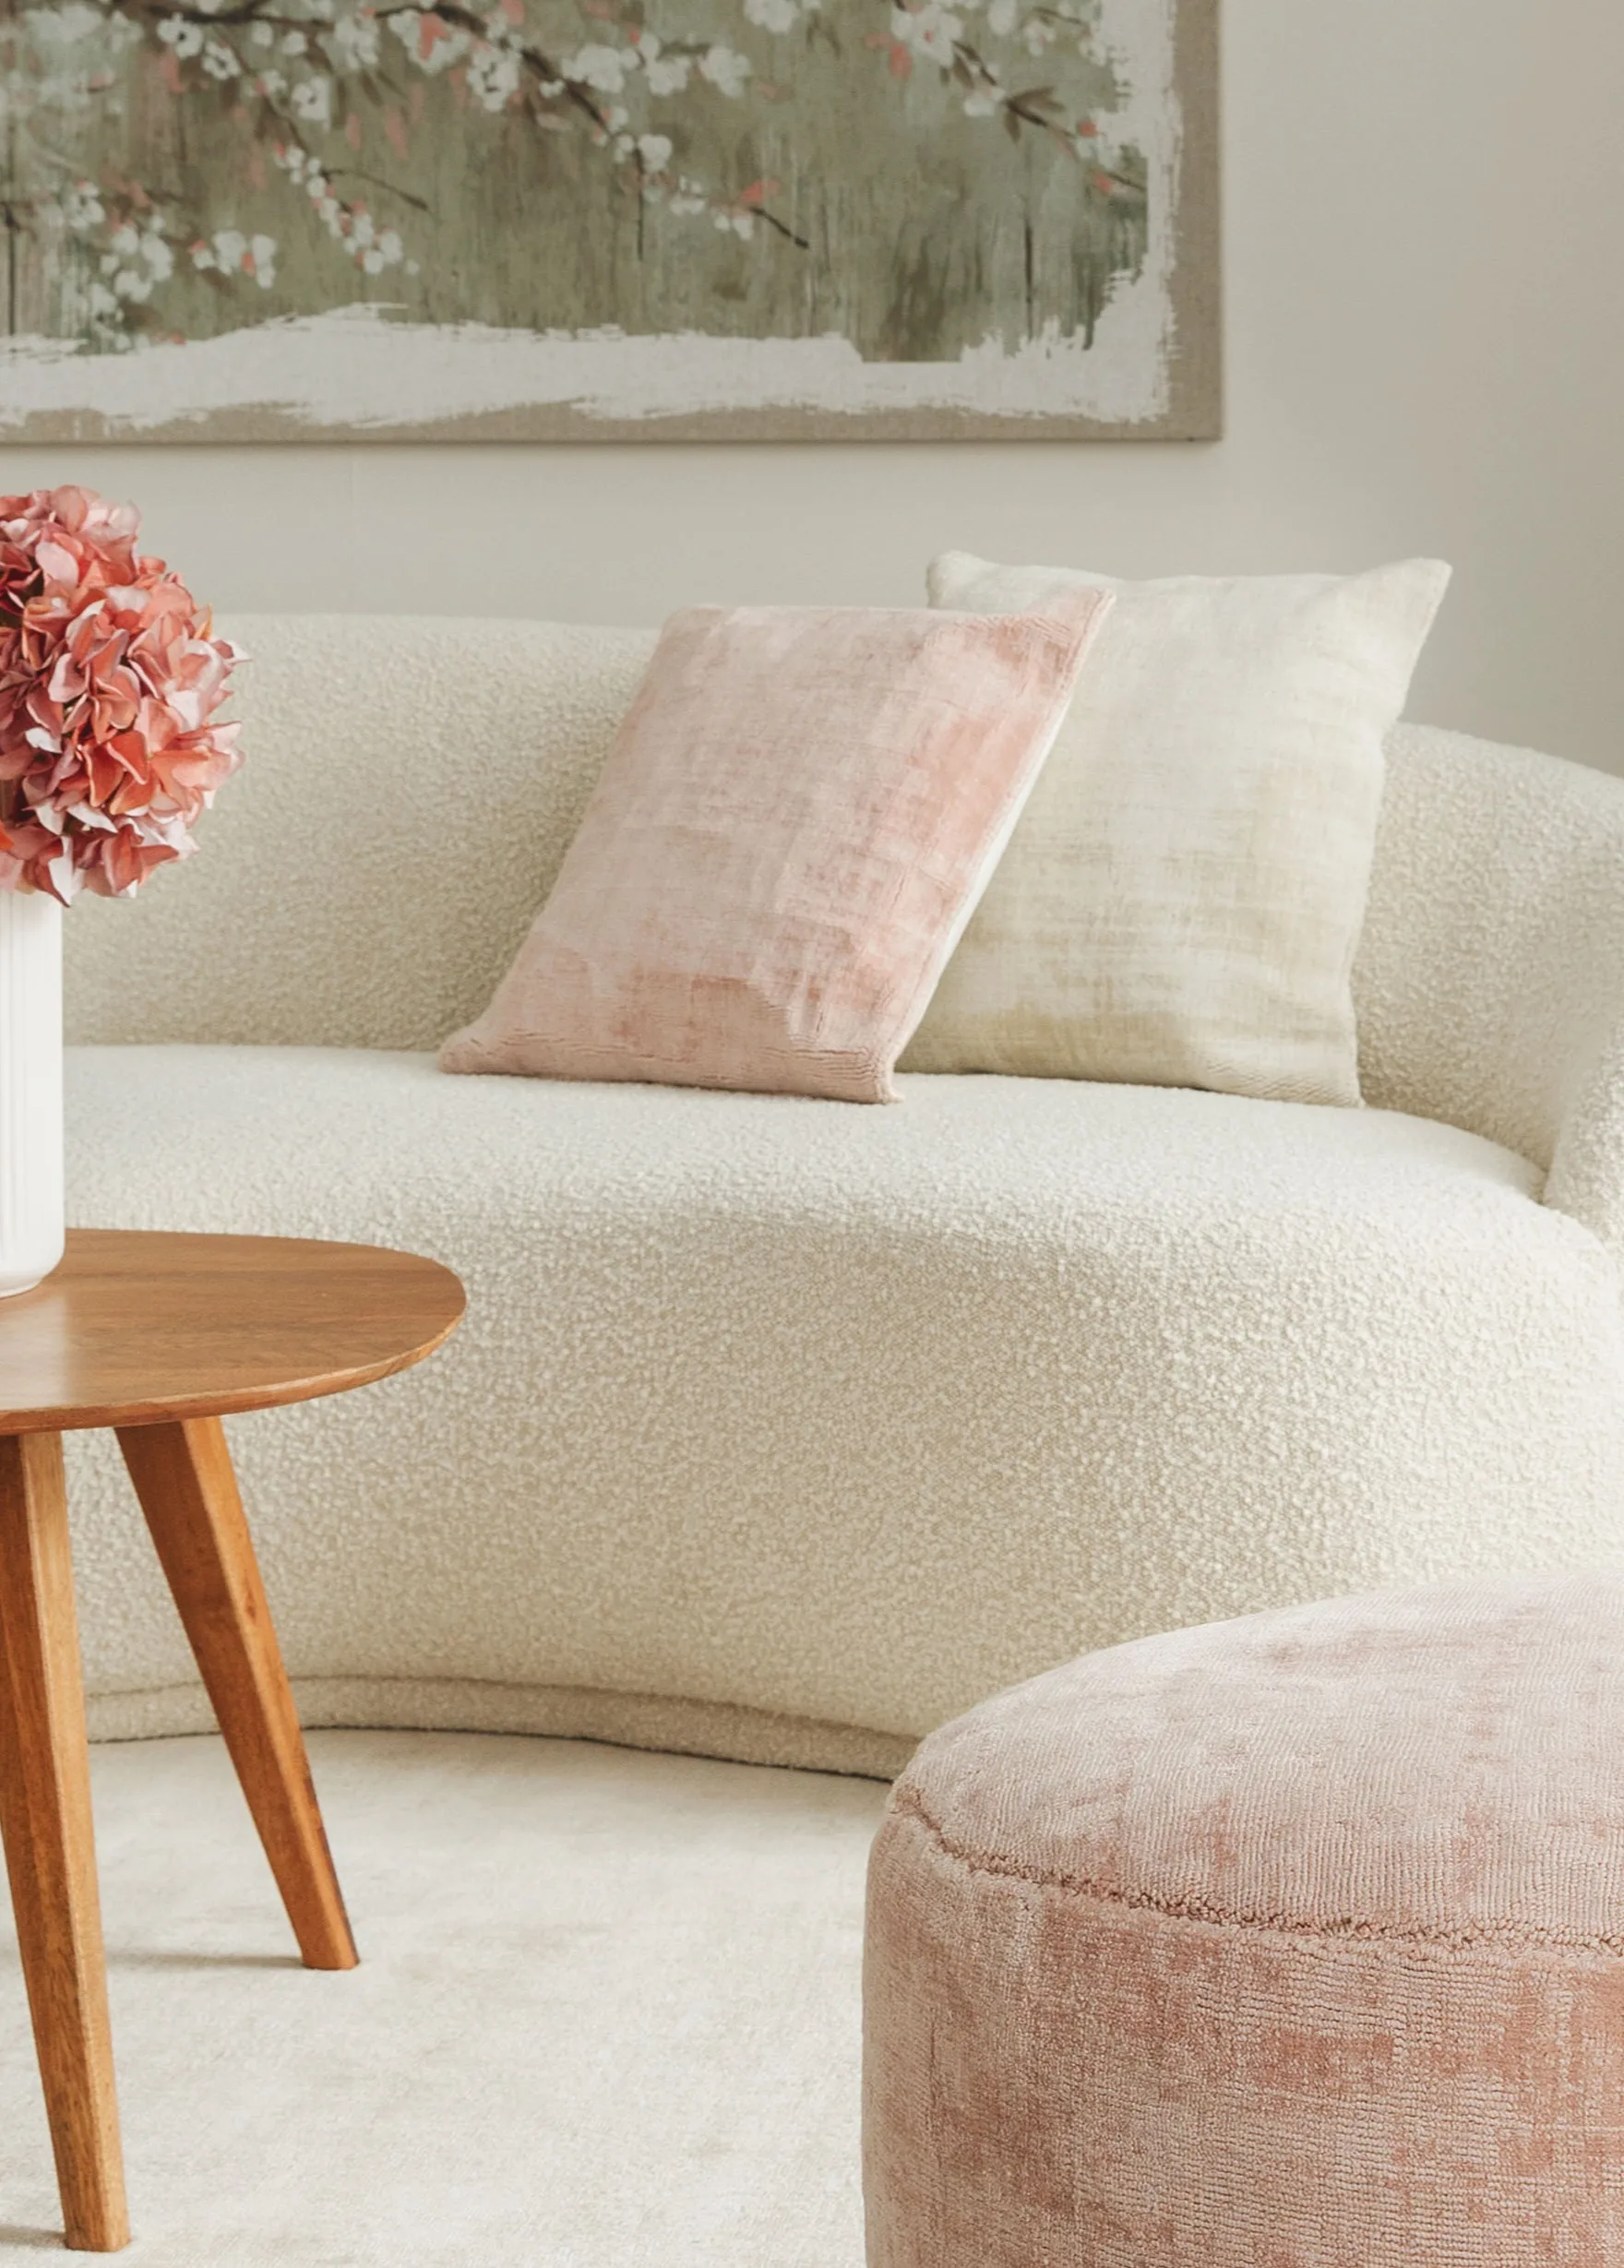 Zwei Dekokissen in Weiß und Rosa auf einem cremefarbenen Sofa in organischer Form, vor dem ein rosa Pouf und ein brauner Couchtisch mit rosanen Blumen in einer weißer Vase steht